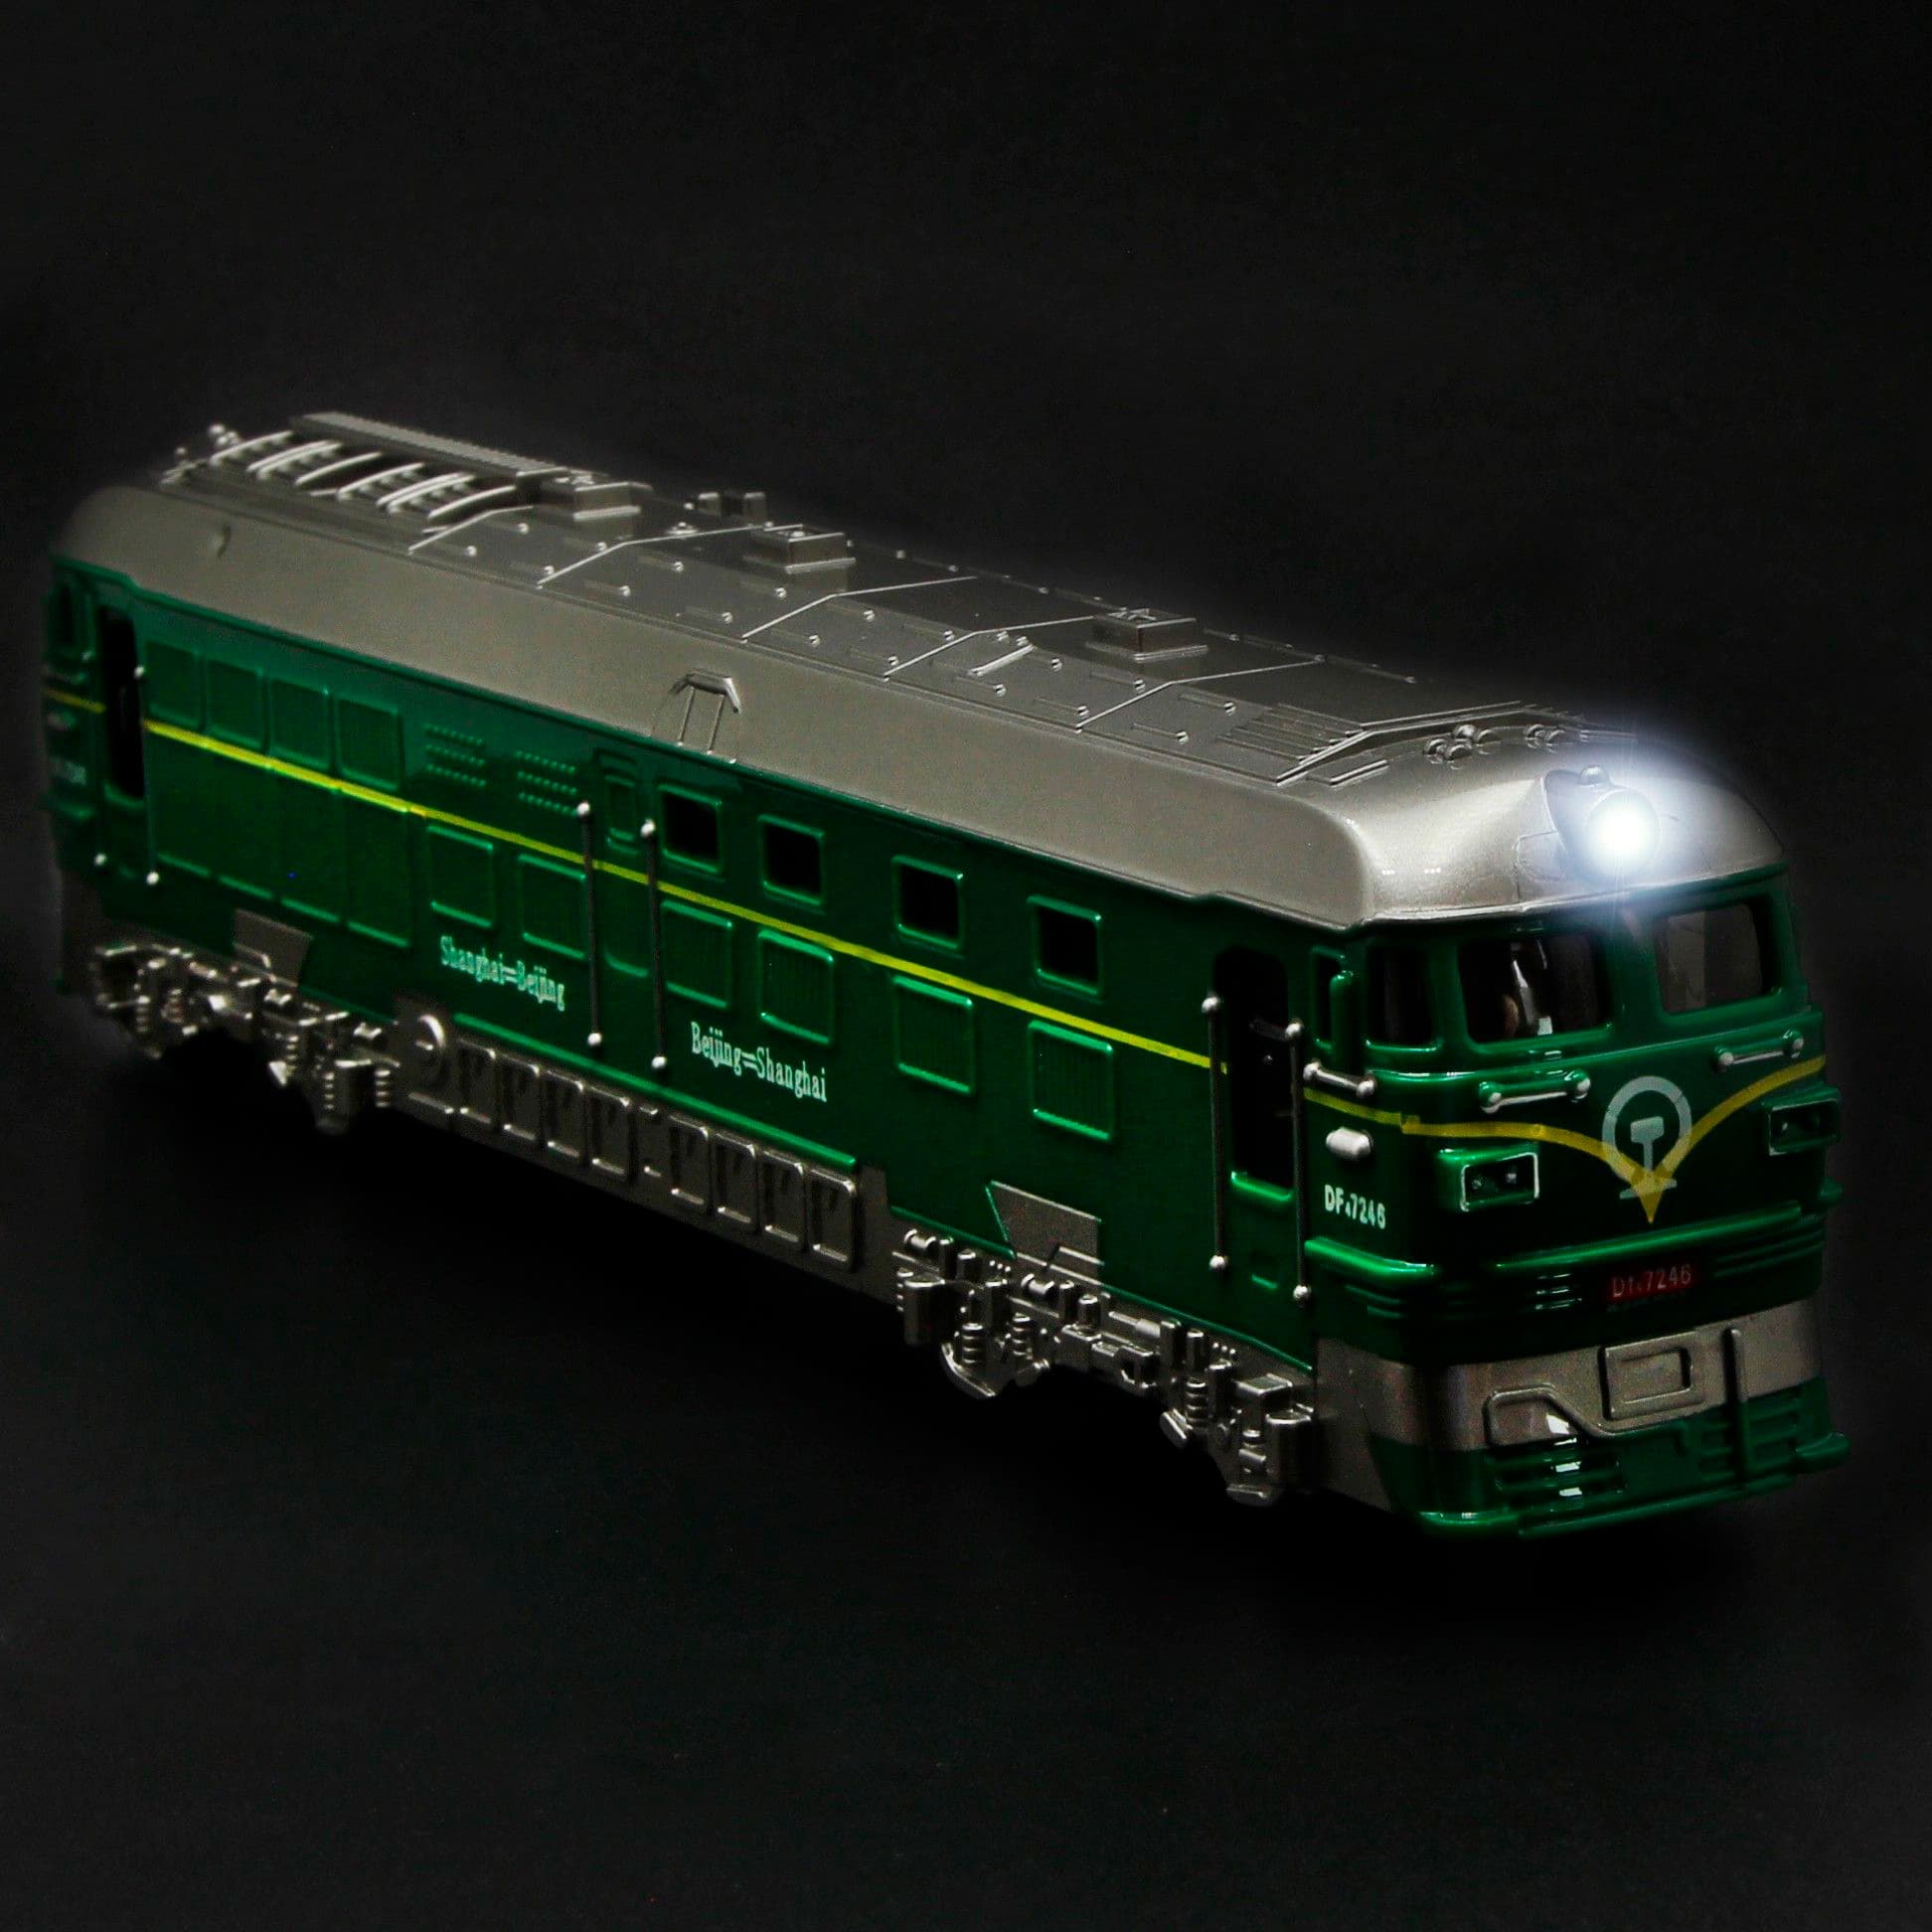 Игрушечный поезд 1:87 «Локомотив» 23 см. G1709 Green Train инерционный, свет, звук  / Зеленый